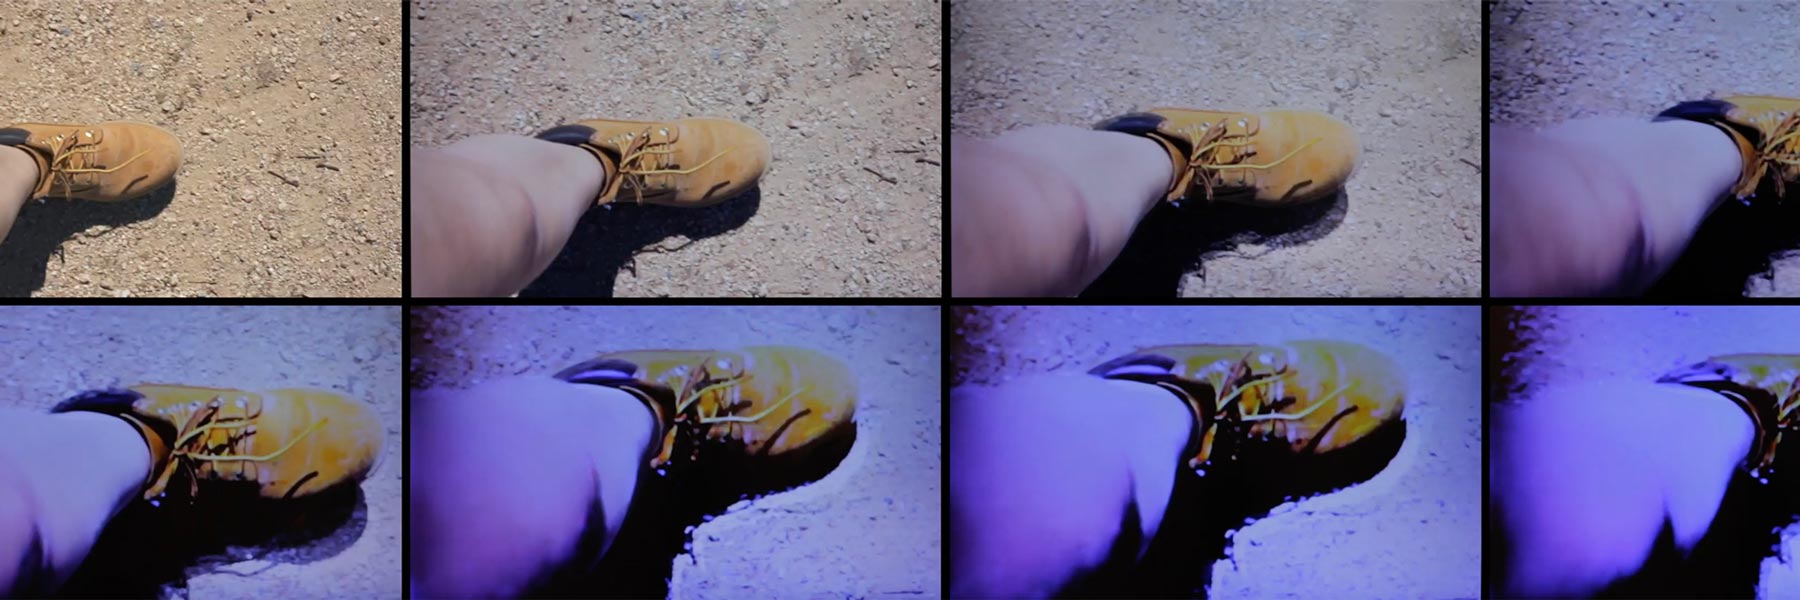 Four photos of the same shoe.